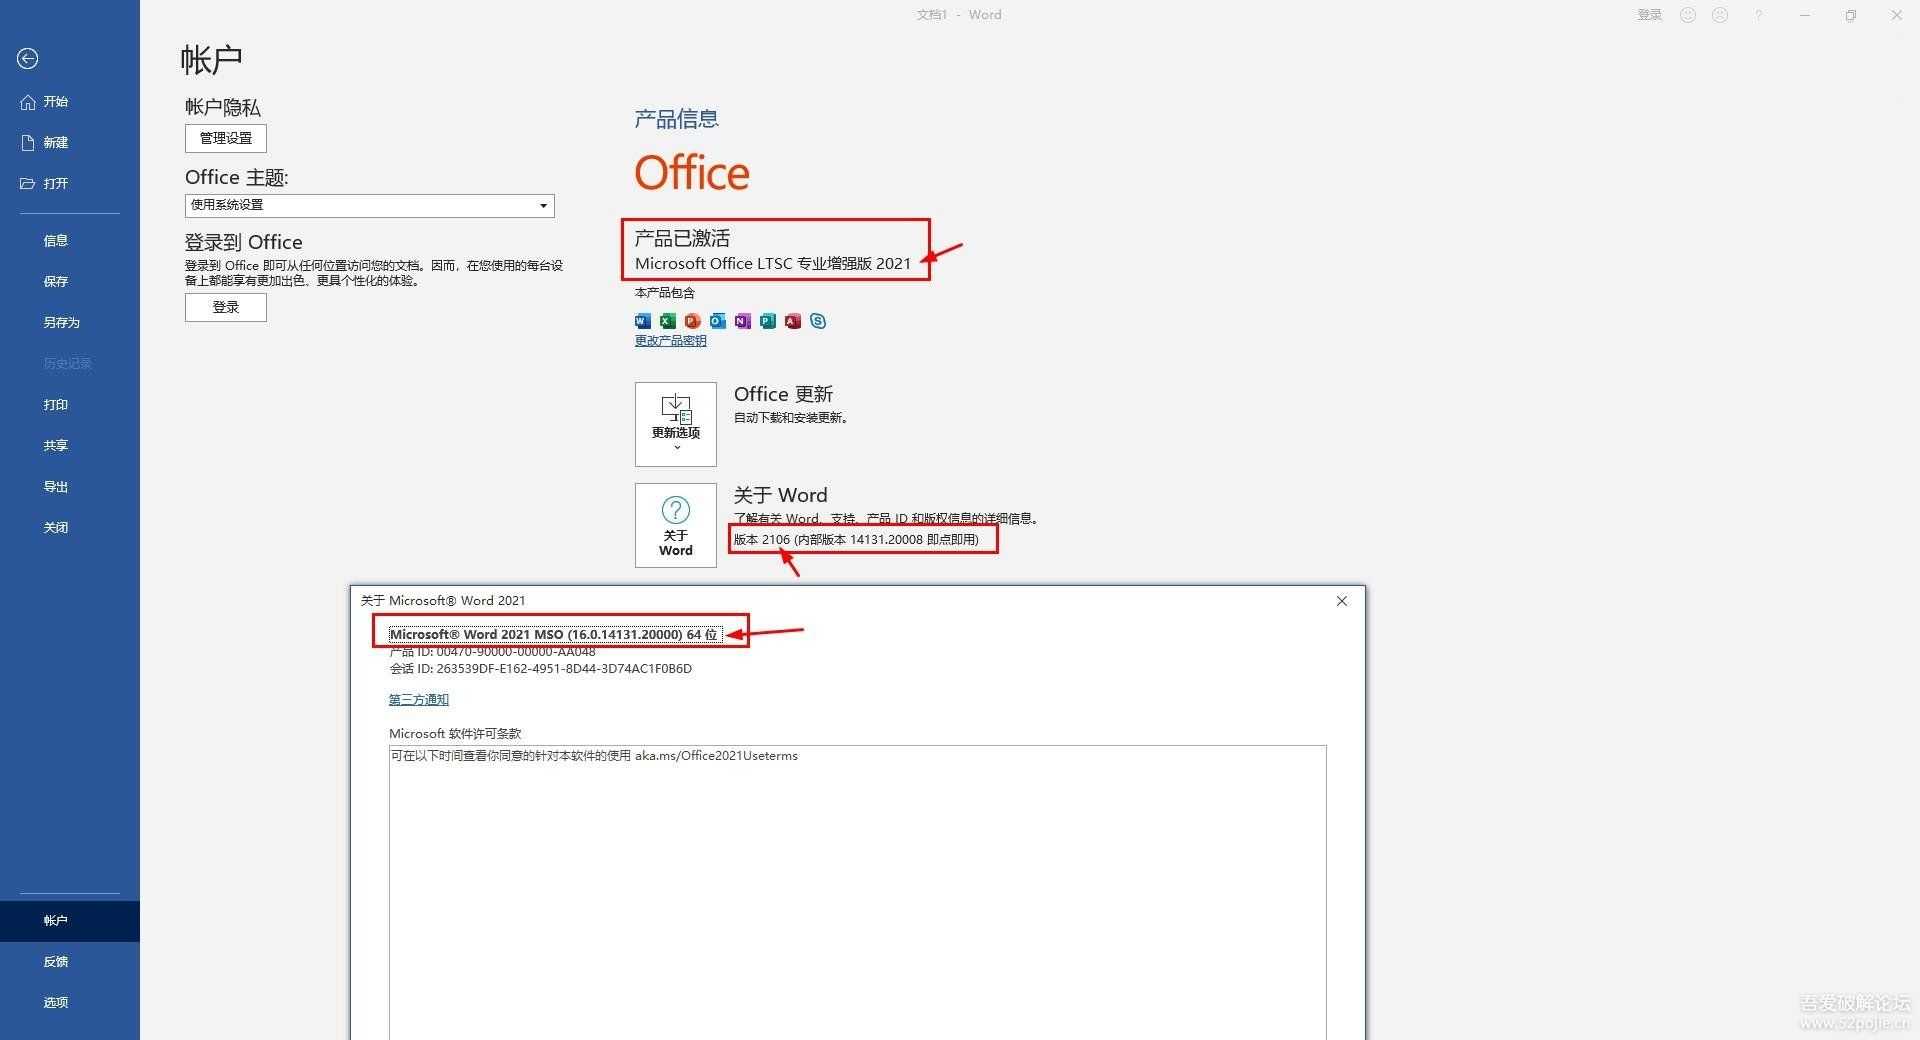 【重发】Office 2021 ProPlus LTSC 16.0.14204.20006 中文+英文 32位+64位